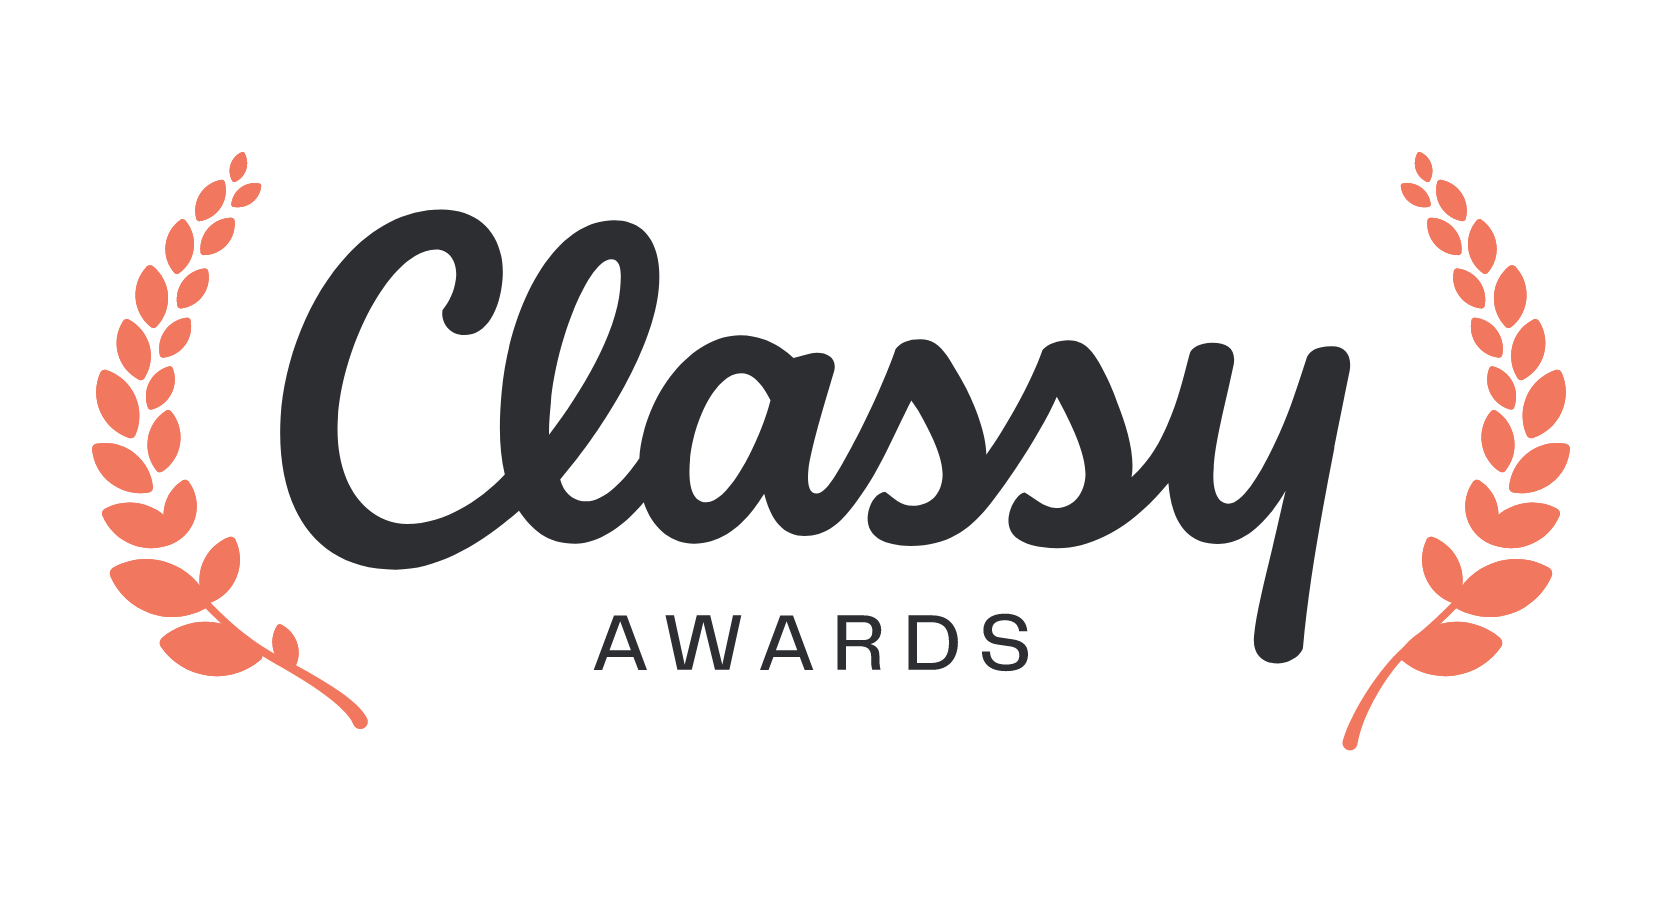 Classy Awards logo